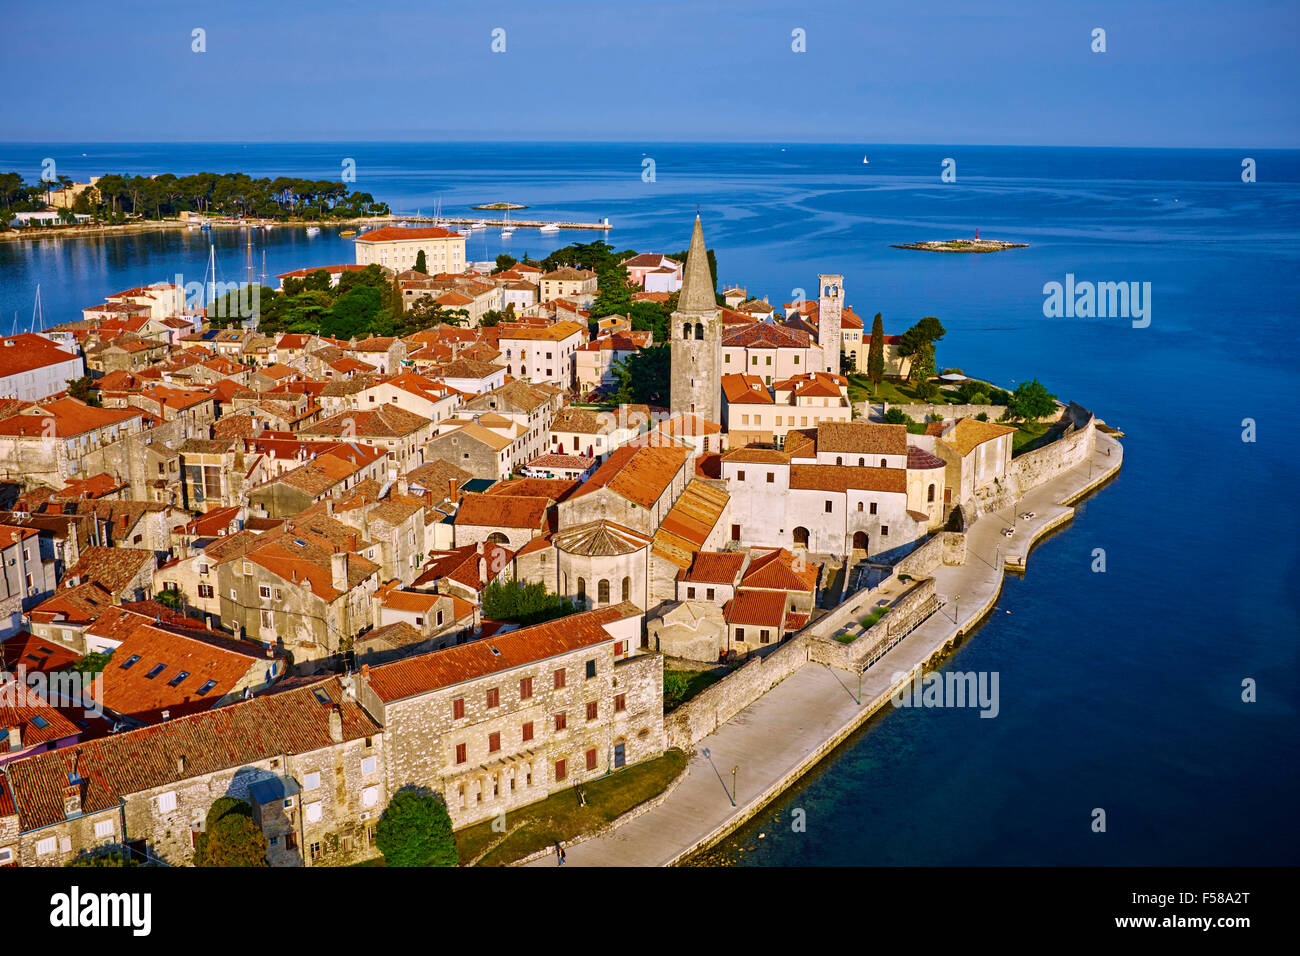 Croatia, Adriatic coast, Istria, village of Porec, aerial view Stock Photo